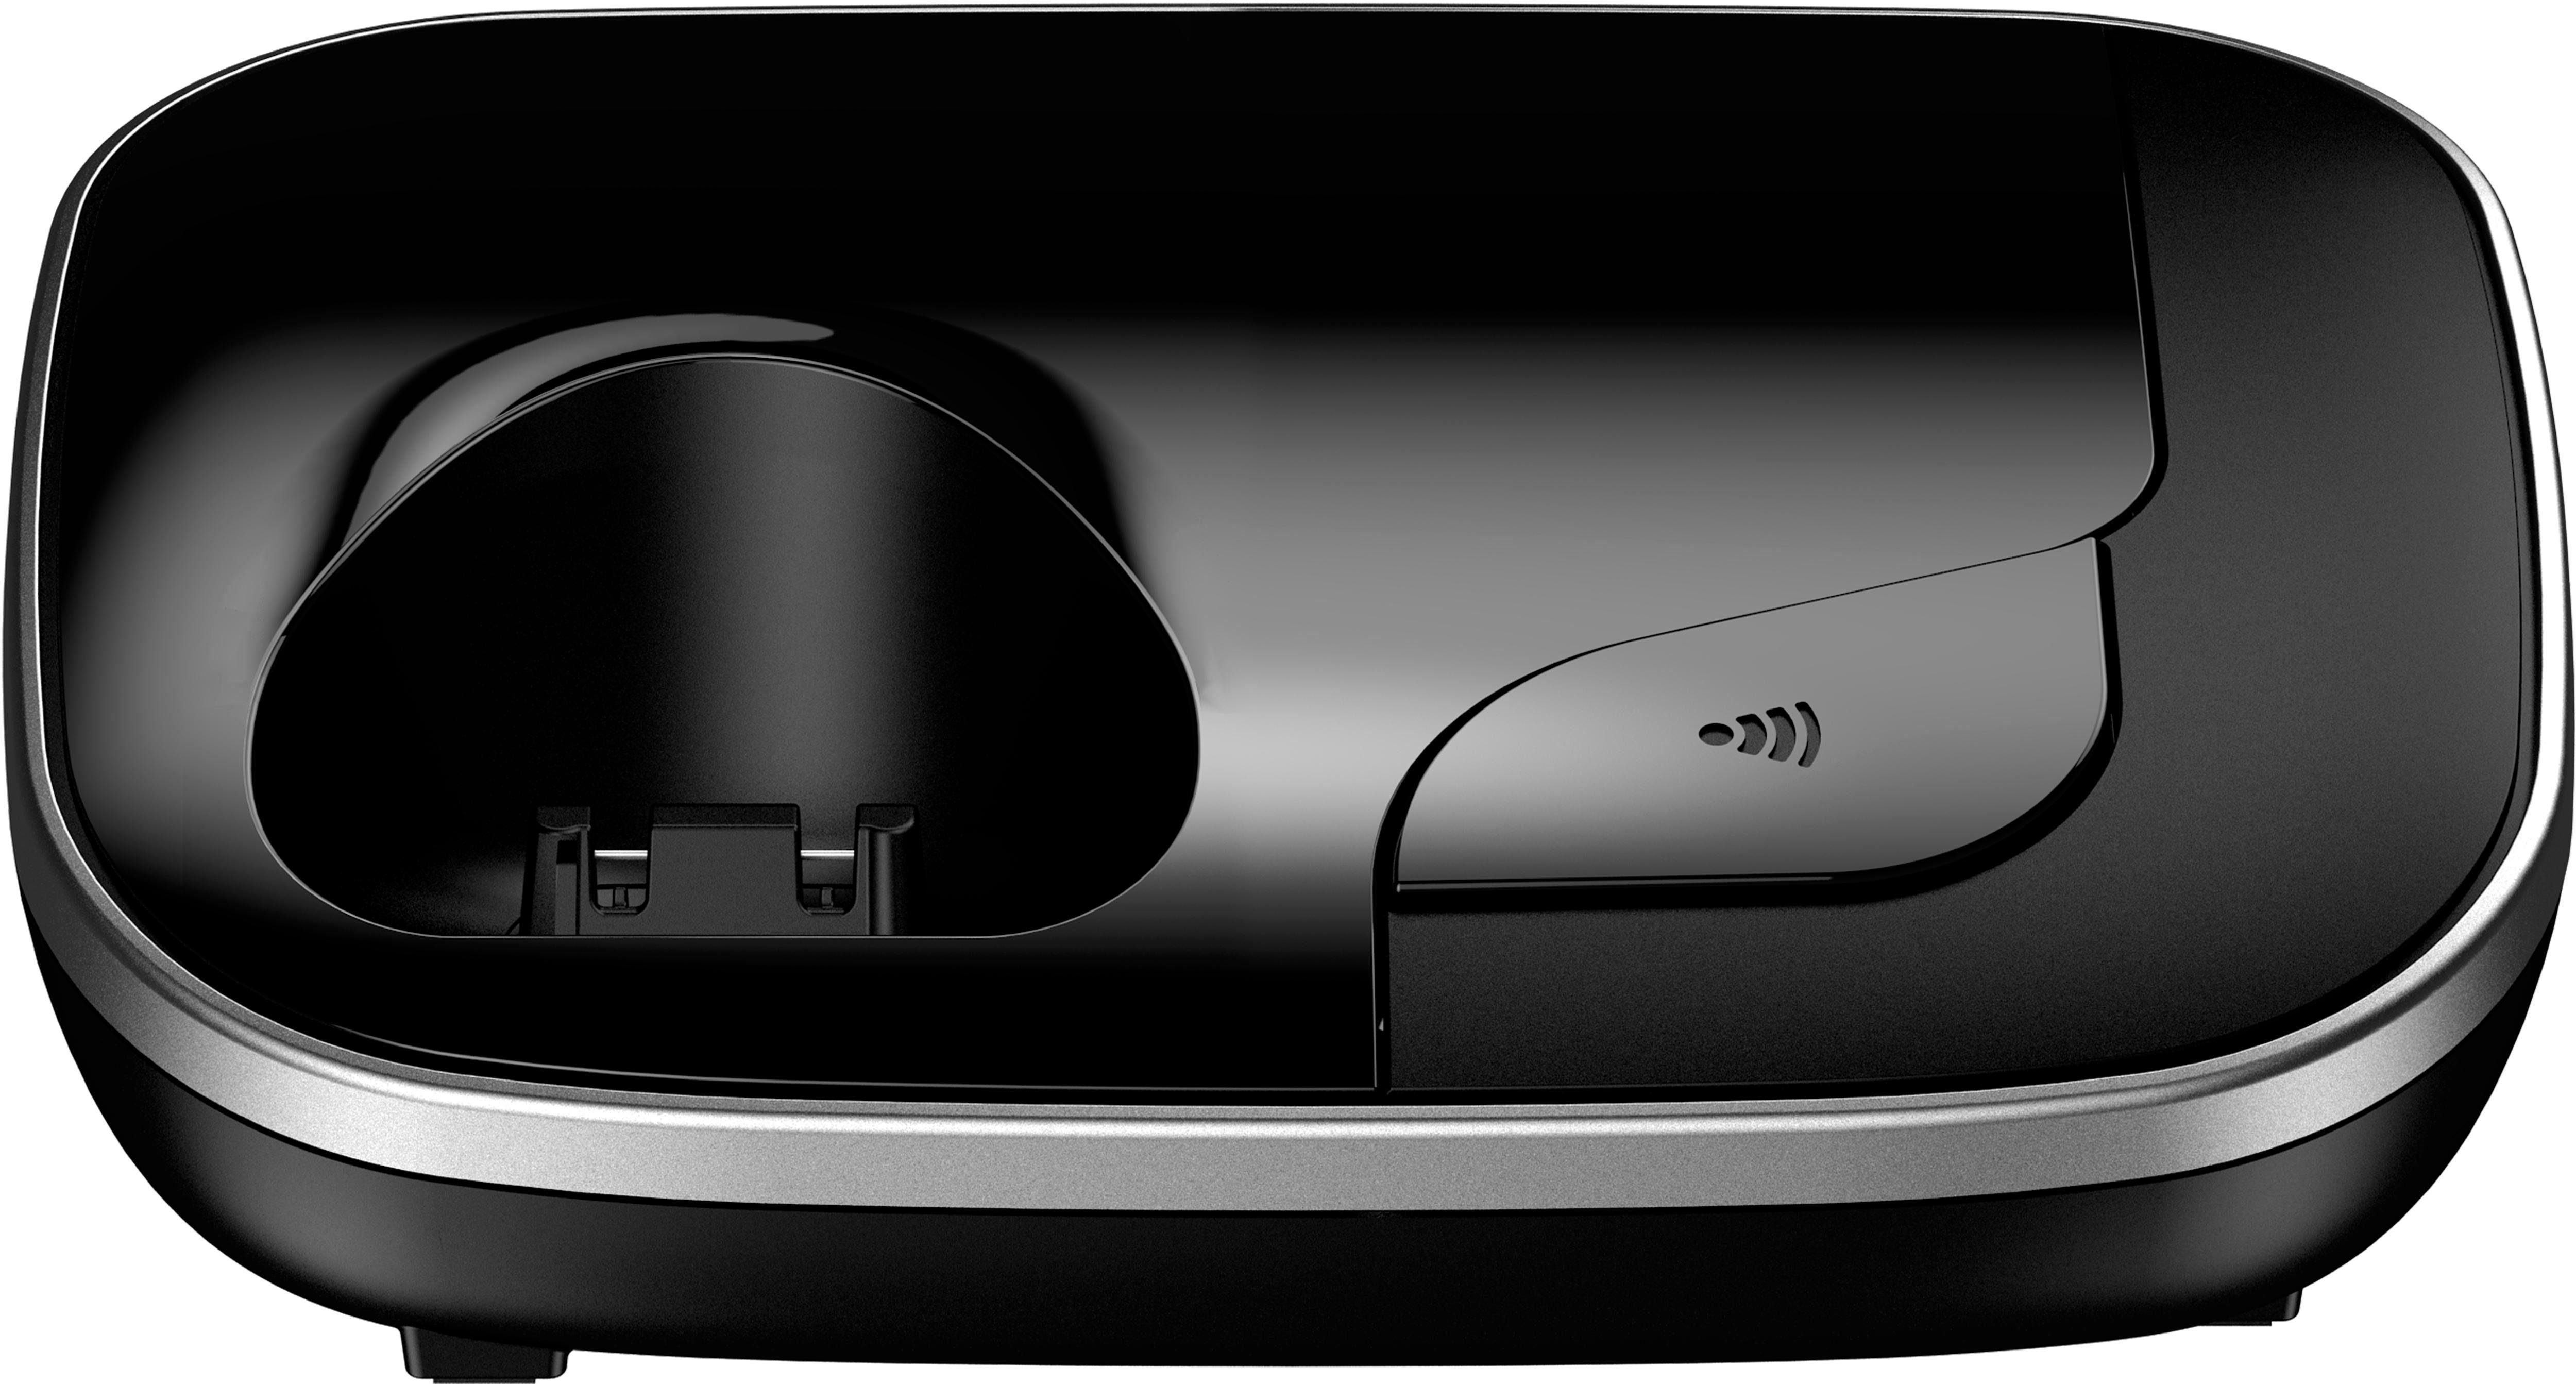 Panasonic KX-TGJ310 Schnurloses DECT-Telefon (Mobilteile: 1, schwarz Freisprechen) Weckfunktion